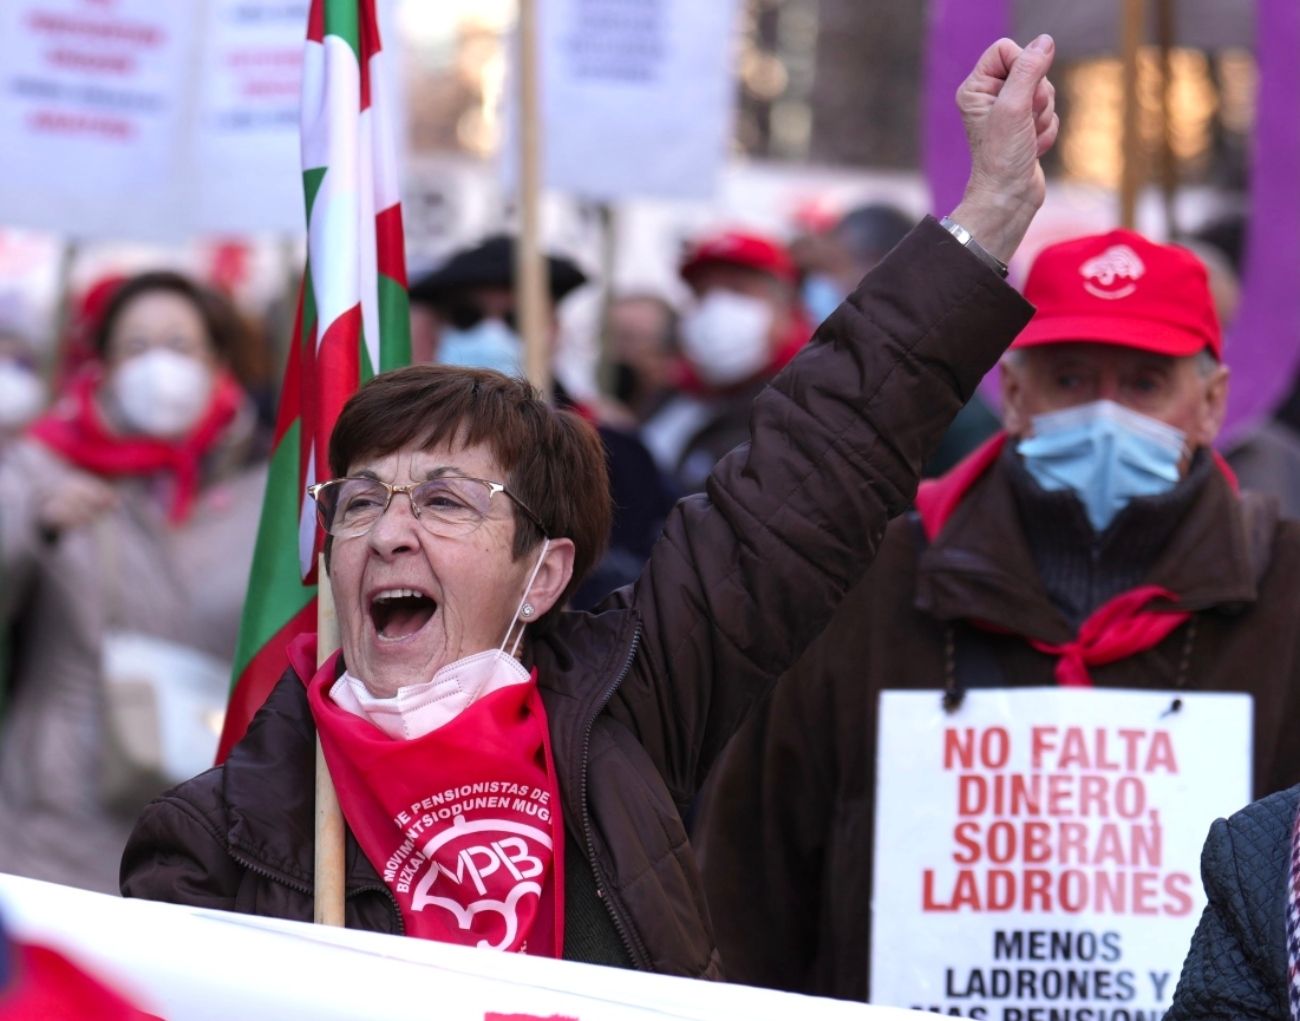 Los pensionistas vascos, en su 5º aniversario: "Tenemos mil razones para seguir peleando"